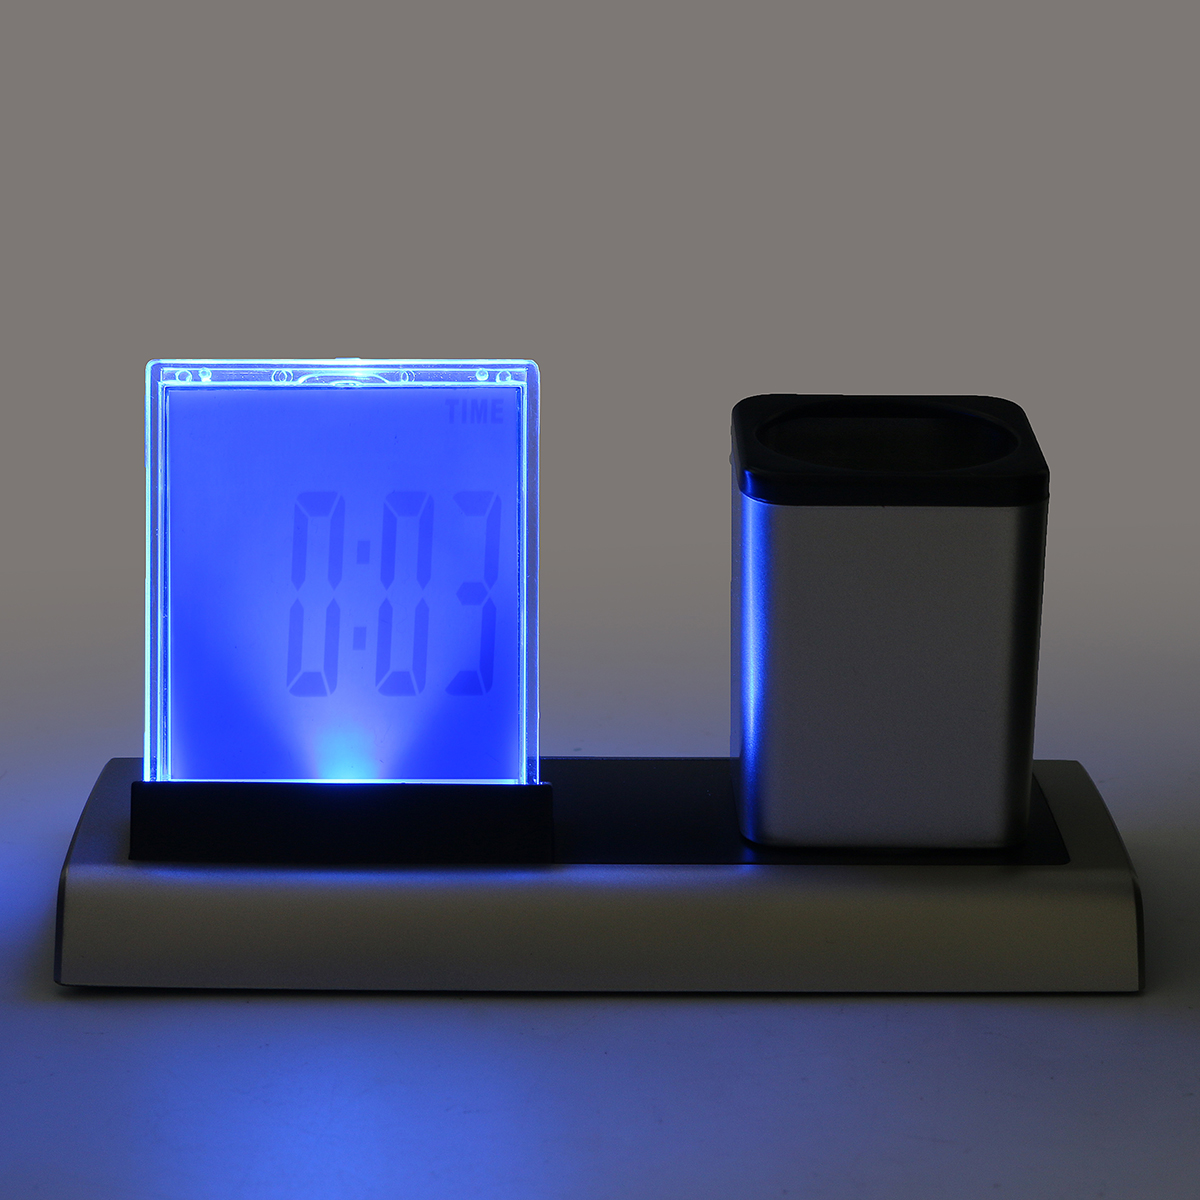 Loskii-DX-222-Colorful-Black-Digital-LED-Desk-Alarm-Clock-Mesh-Pen-Holder-Calendar-Timer-Thermometer-1152774